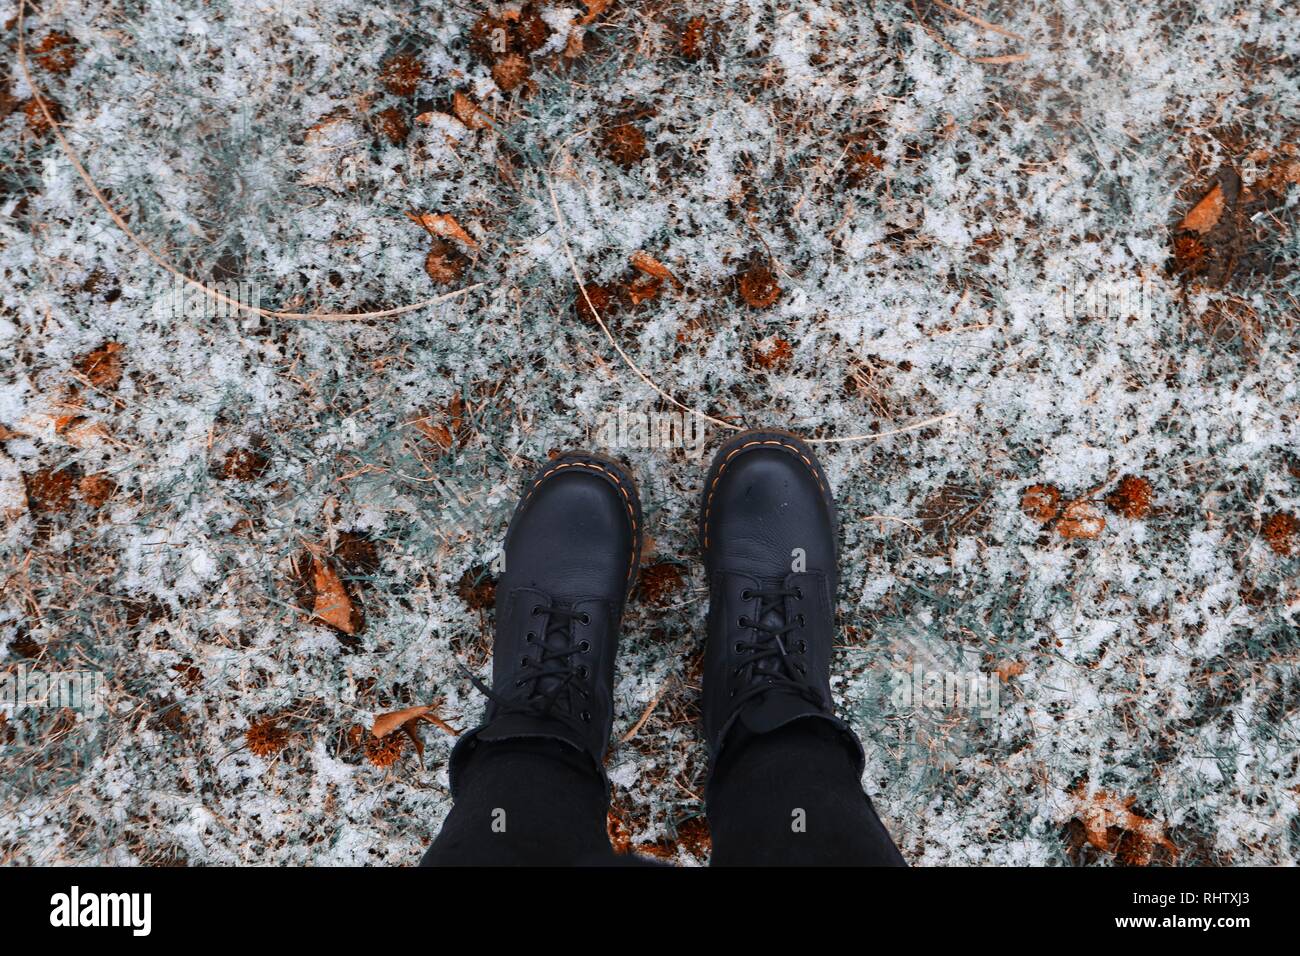 Le Dr Martens sur neige avec les feuilles tombées Photo Stock - Alamy